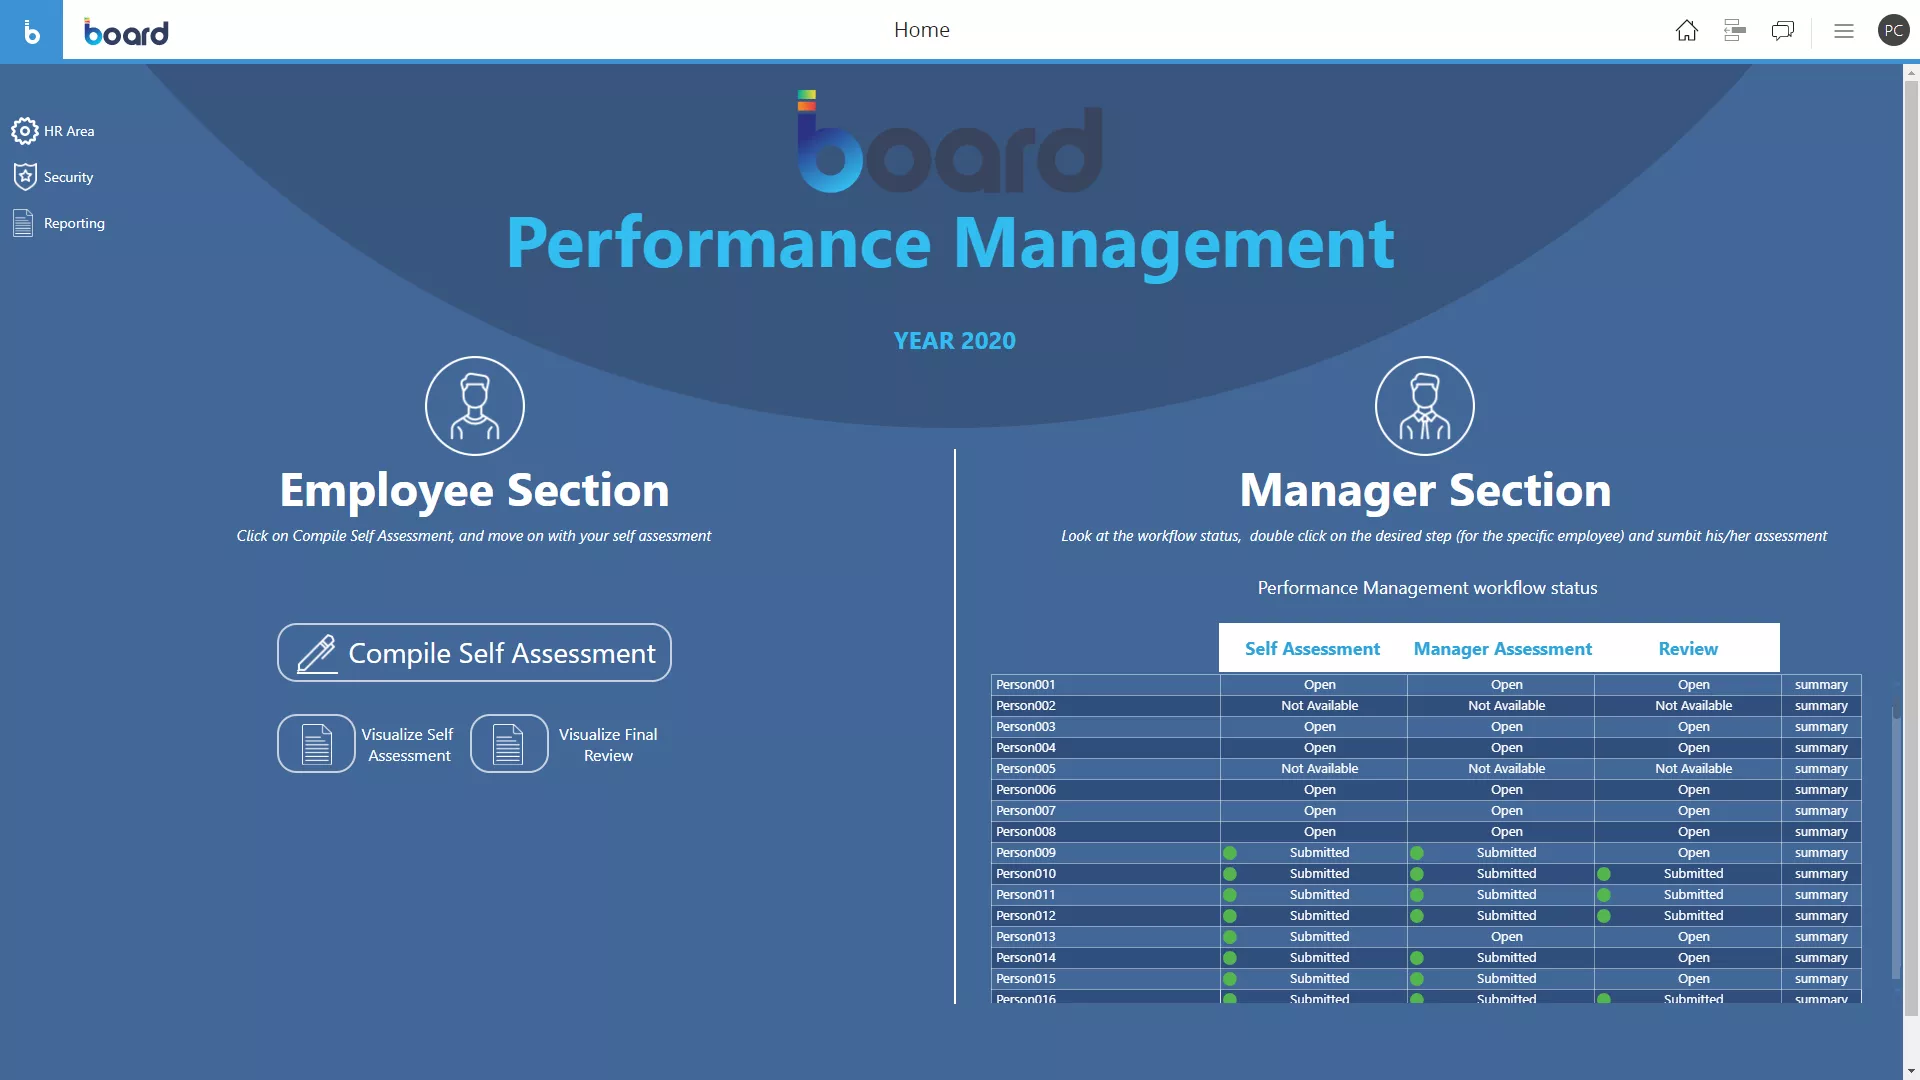 Performance Management para RR.HH. Image 1